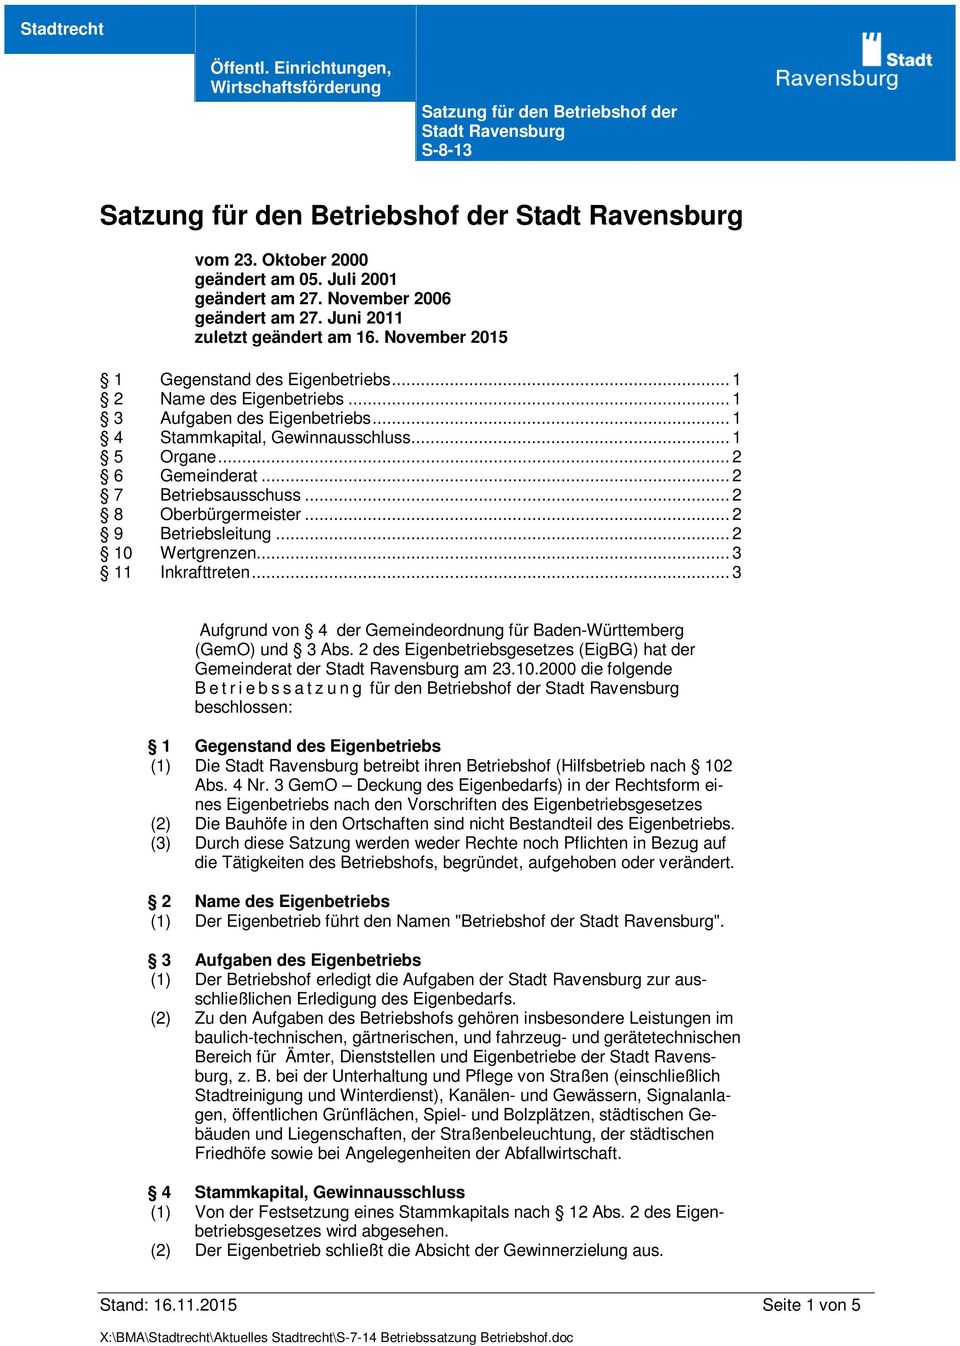 .. 3 11 Inkrafttreten... 3 Aufgrund von 4 der Gemeindeordnung für Baden-Württemberg (GemO) und 3 Abs. 2 des Eigenbetriebsgesetzes (EigBG) hat der Gemeinderat der am 23.10.